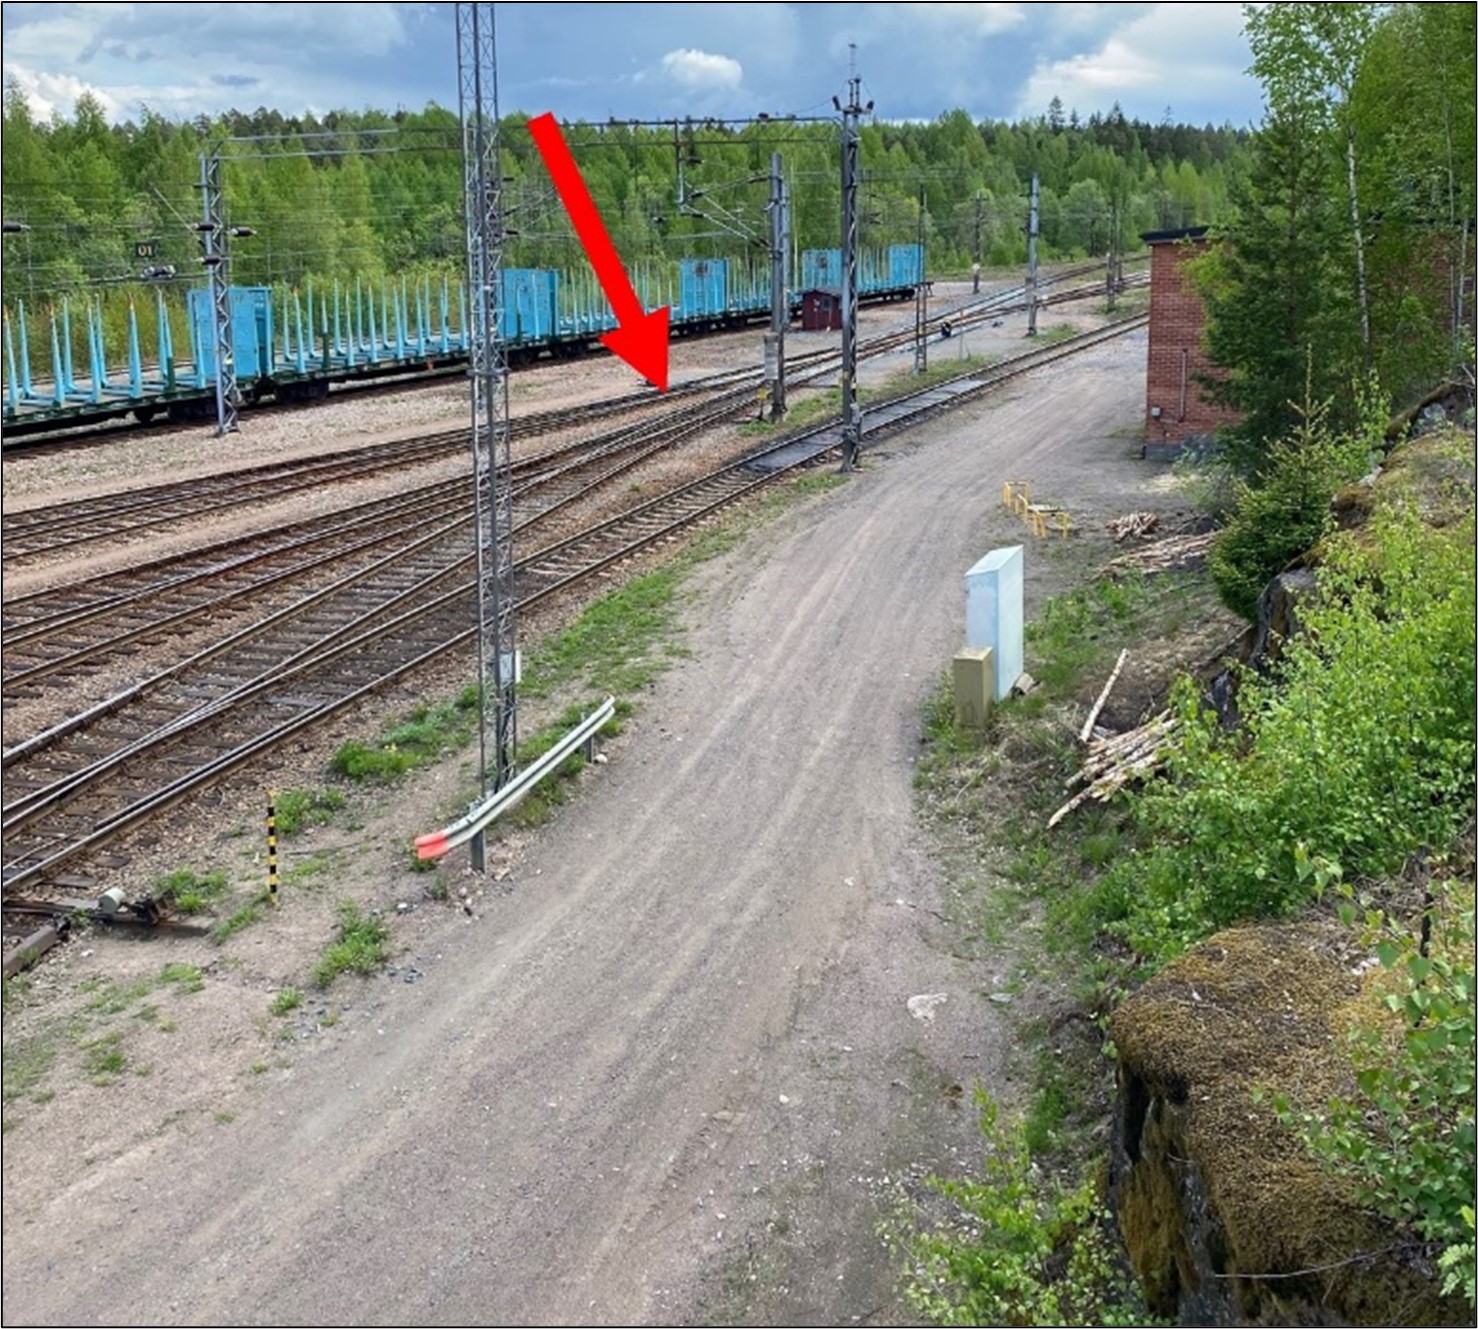 Bild från Kuusankoski station mot bangården i tågets färdriktning. Växeln som var i fel position har markerats med en pil.